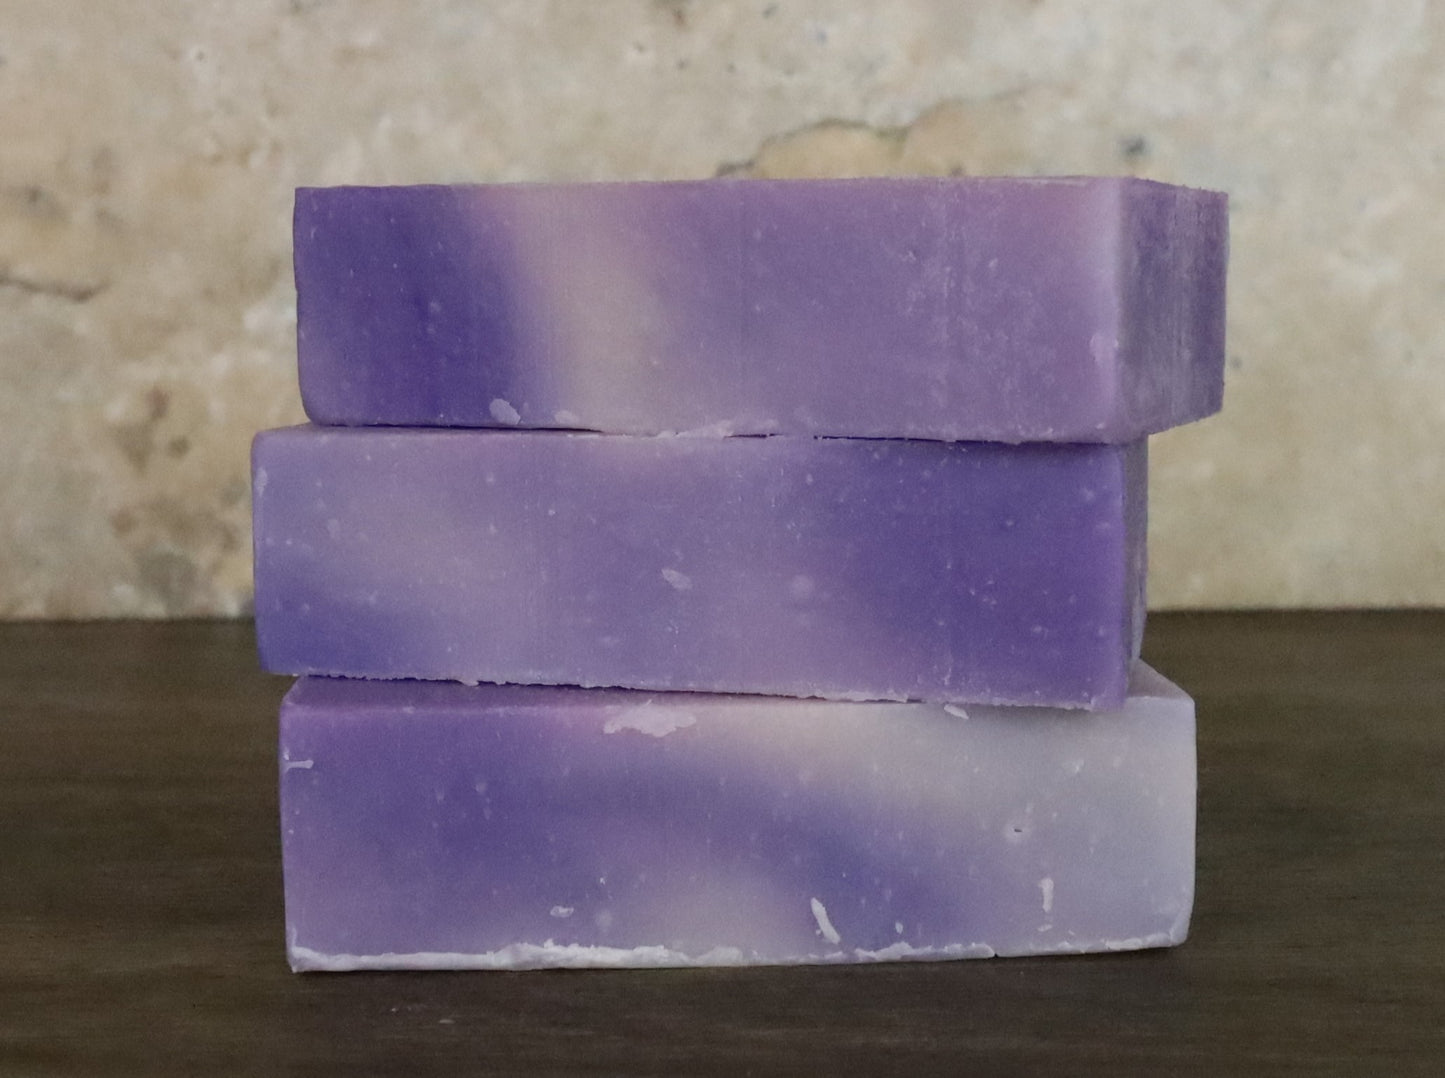 Lavender shea butter soap for moisturized skin.